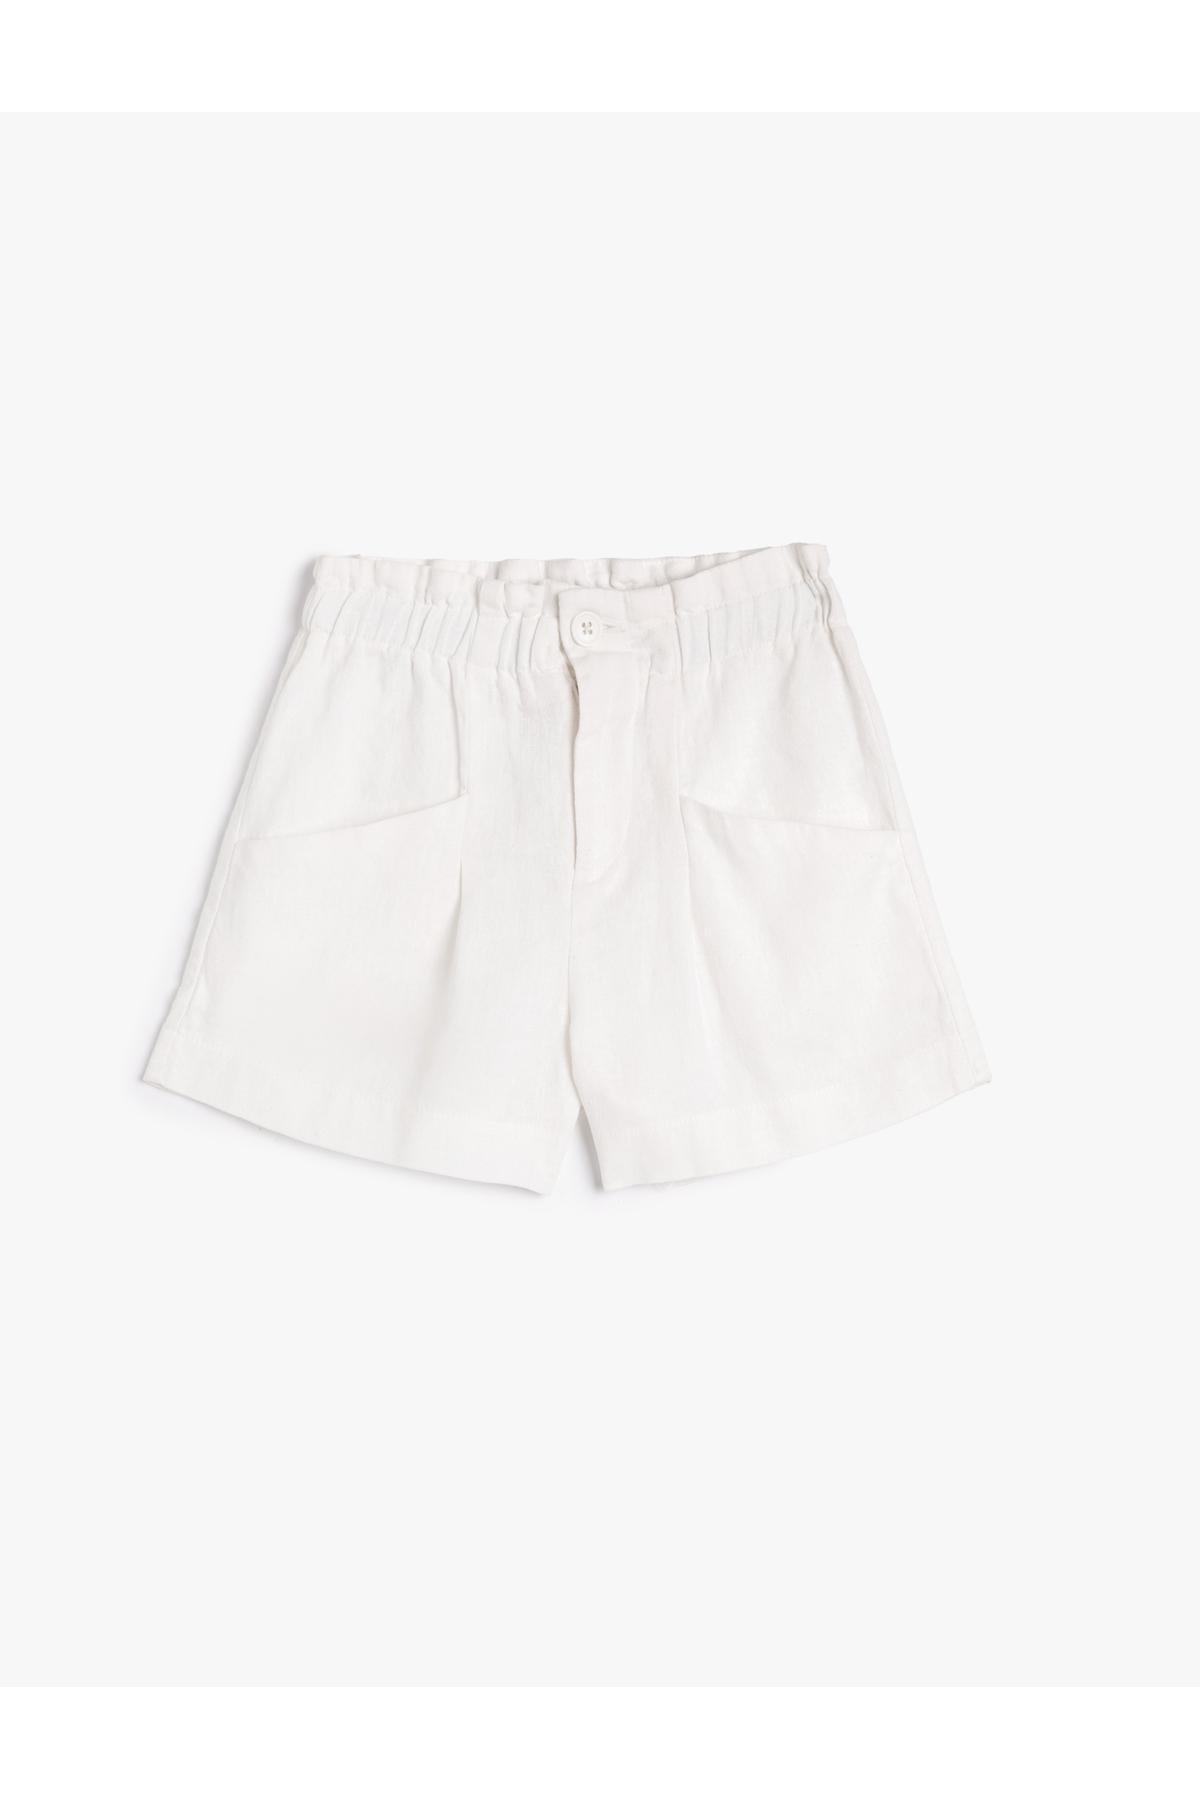 Koton - White Linen Shorts, Kids Girls